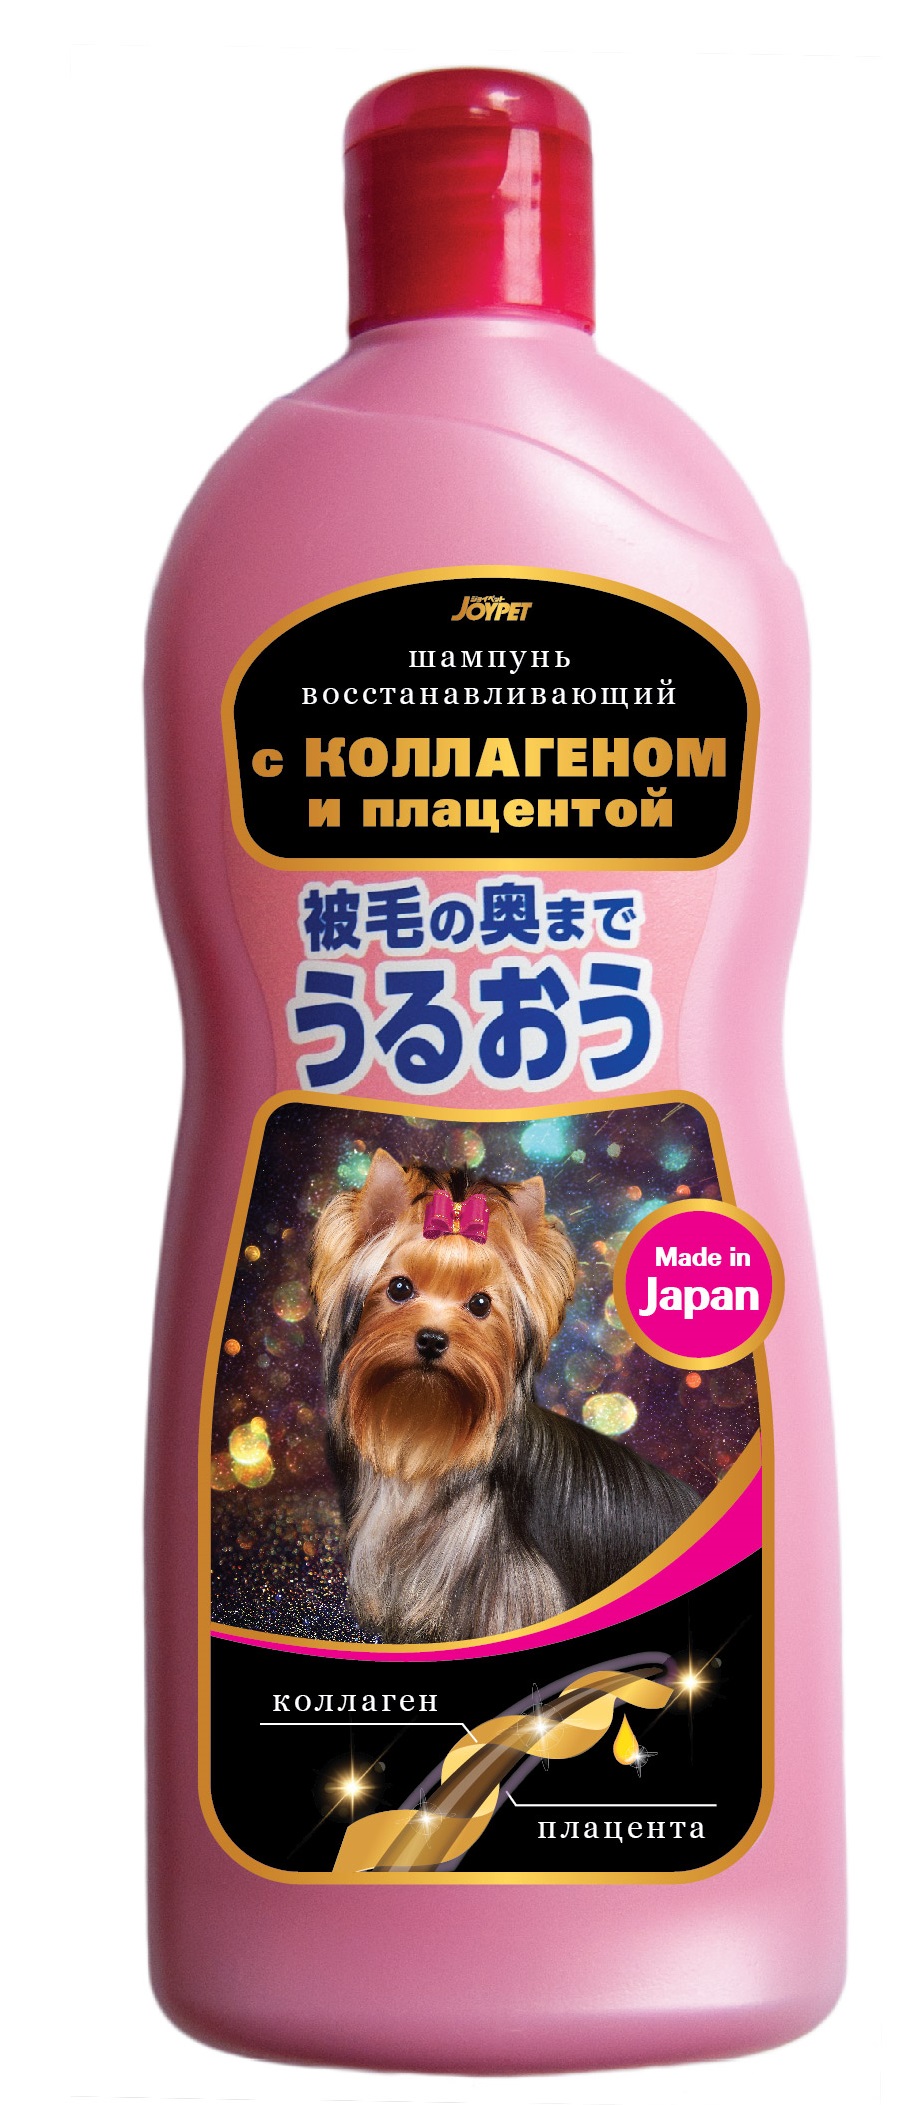 Джой петс. Шампунь Japan Premium Pet. Шампунь для собак Premium Pet Japan с коллагеном и плацентой. Joypet шампунь для собак с коллагеном и плацентой. Шампунь японский с плацентой для собаки.